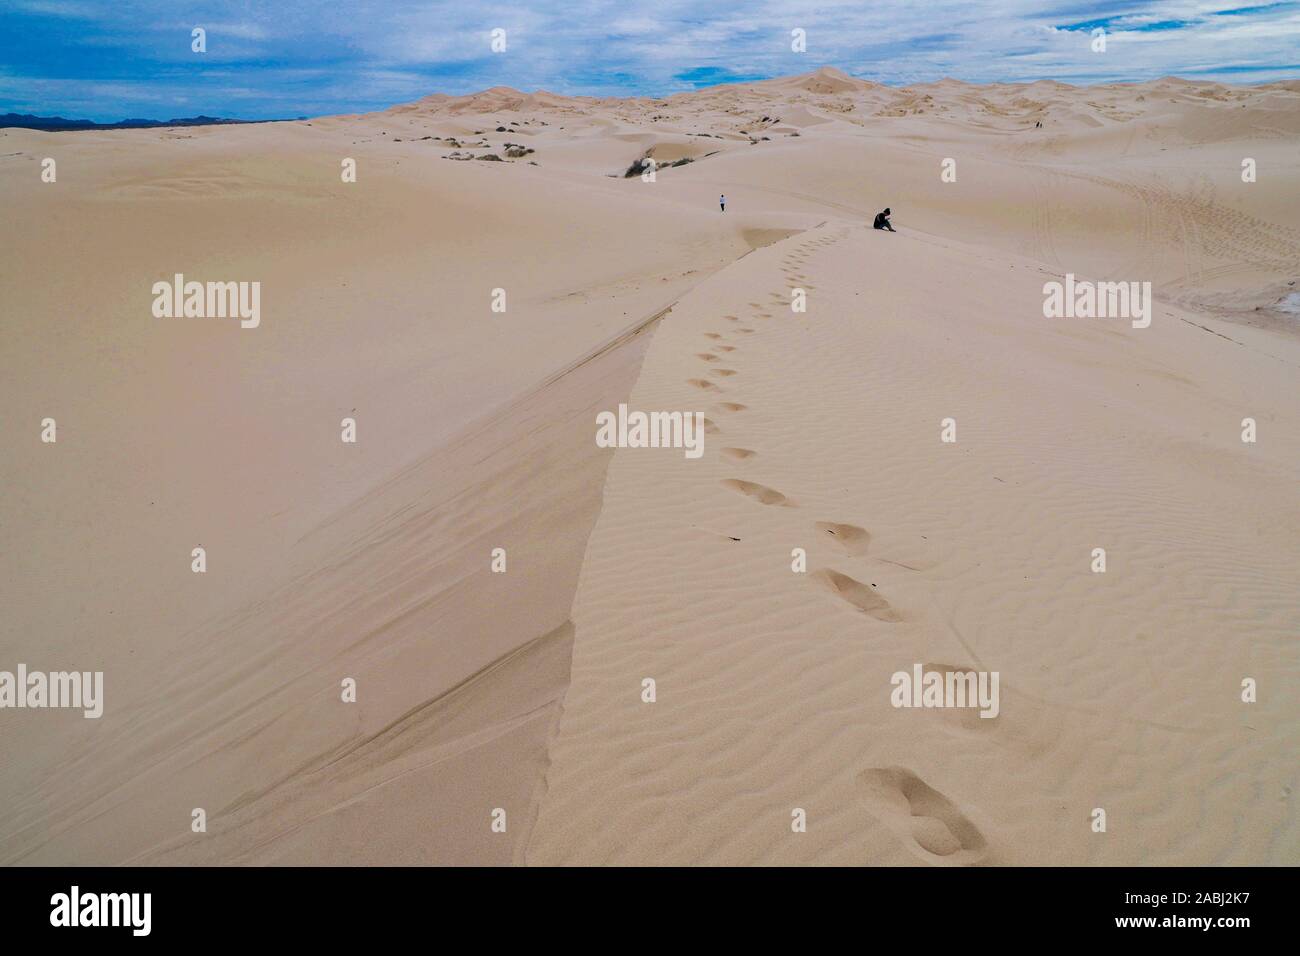 Dunes de sable du désert, Chihuahua Mexique Samalayuca. 52 km au sud de Ciudad Juárez, au beau milieu du désert, région connue sous le nom de Médanos Samalayuc Banque D'Images